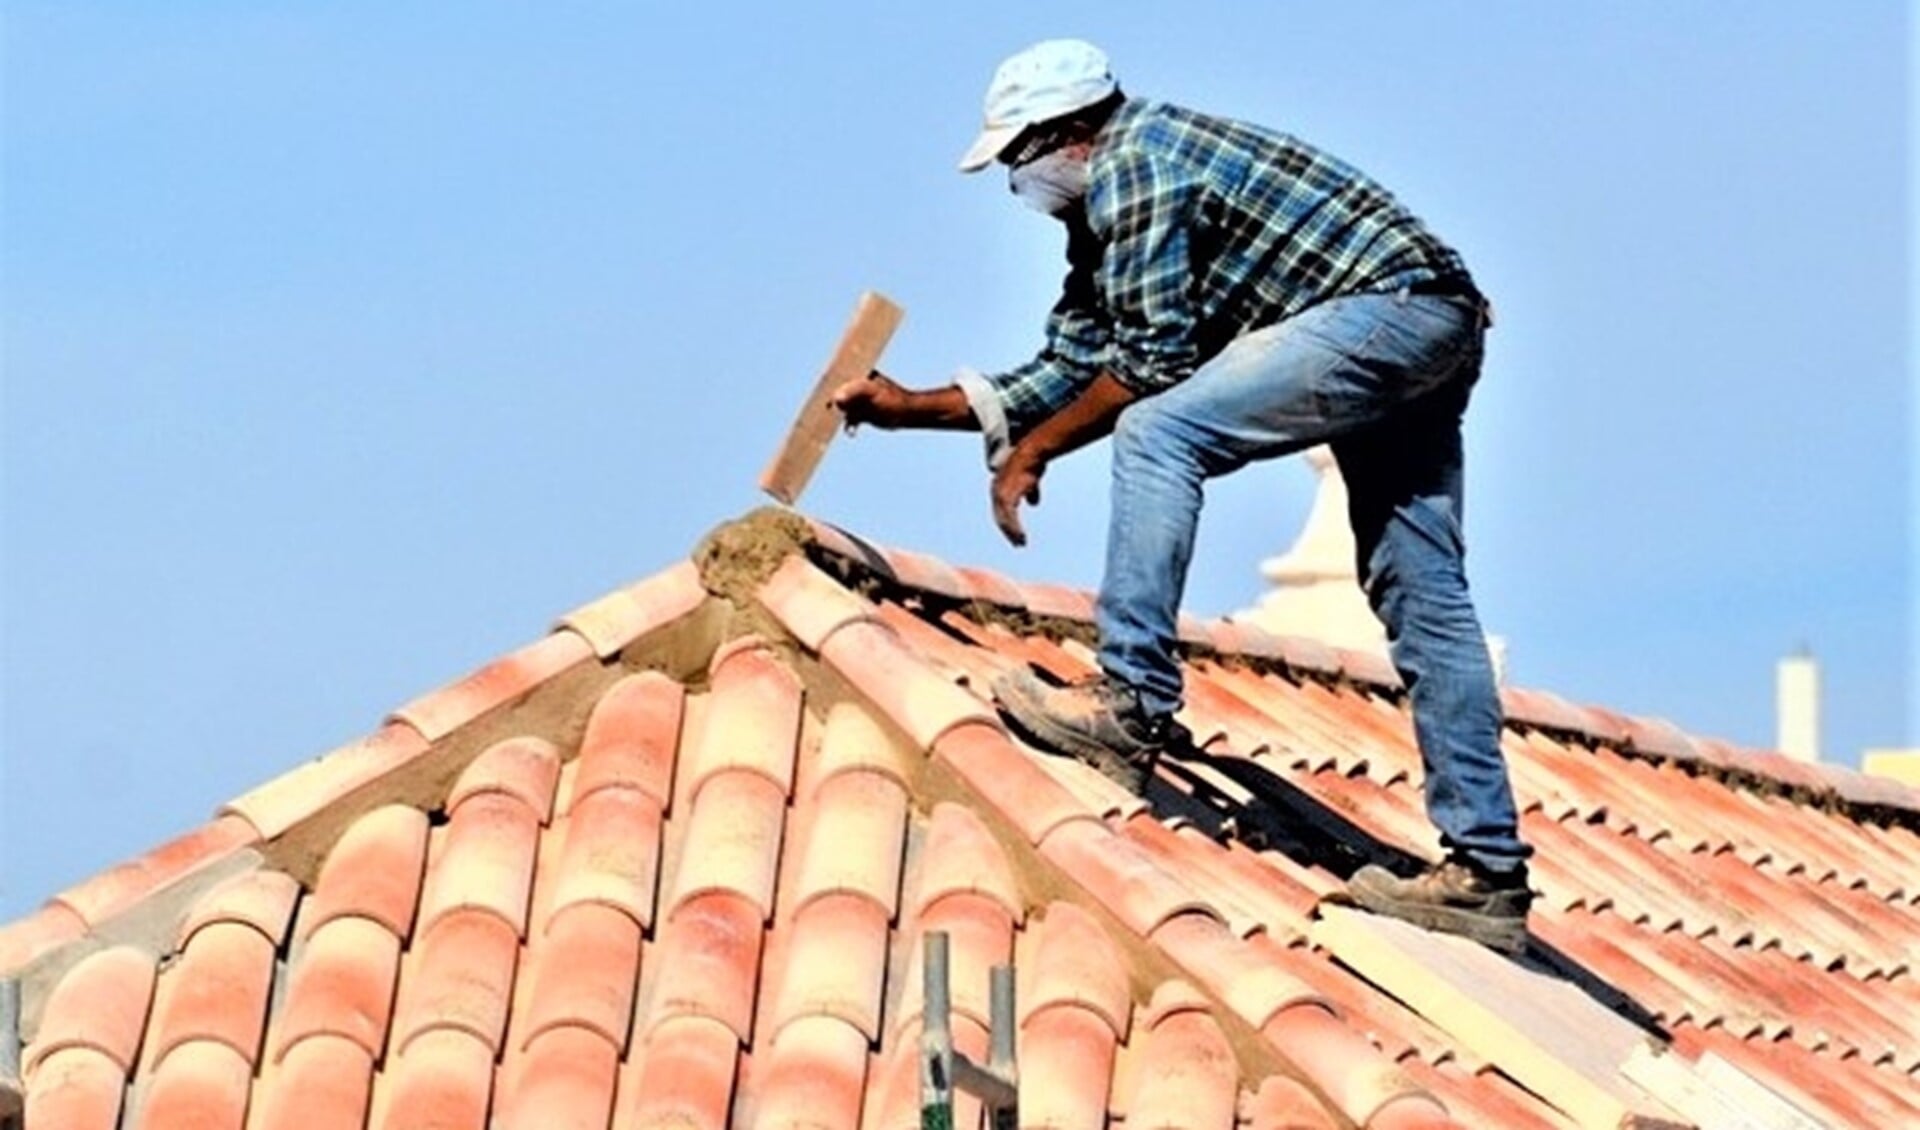 Oplichters bieden bijvoorbeeld werkzaamheden aan het dak aan (stockfoto van onbekend persoon die werk op een dak verricht). 